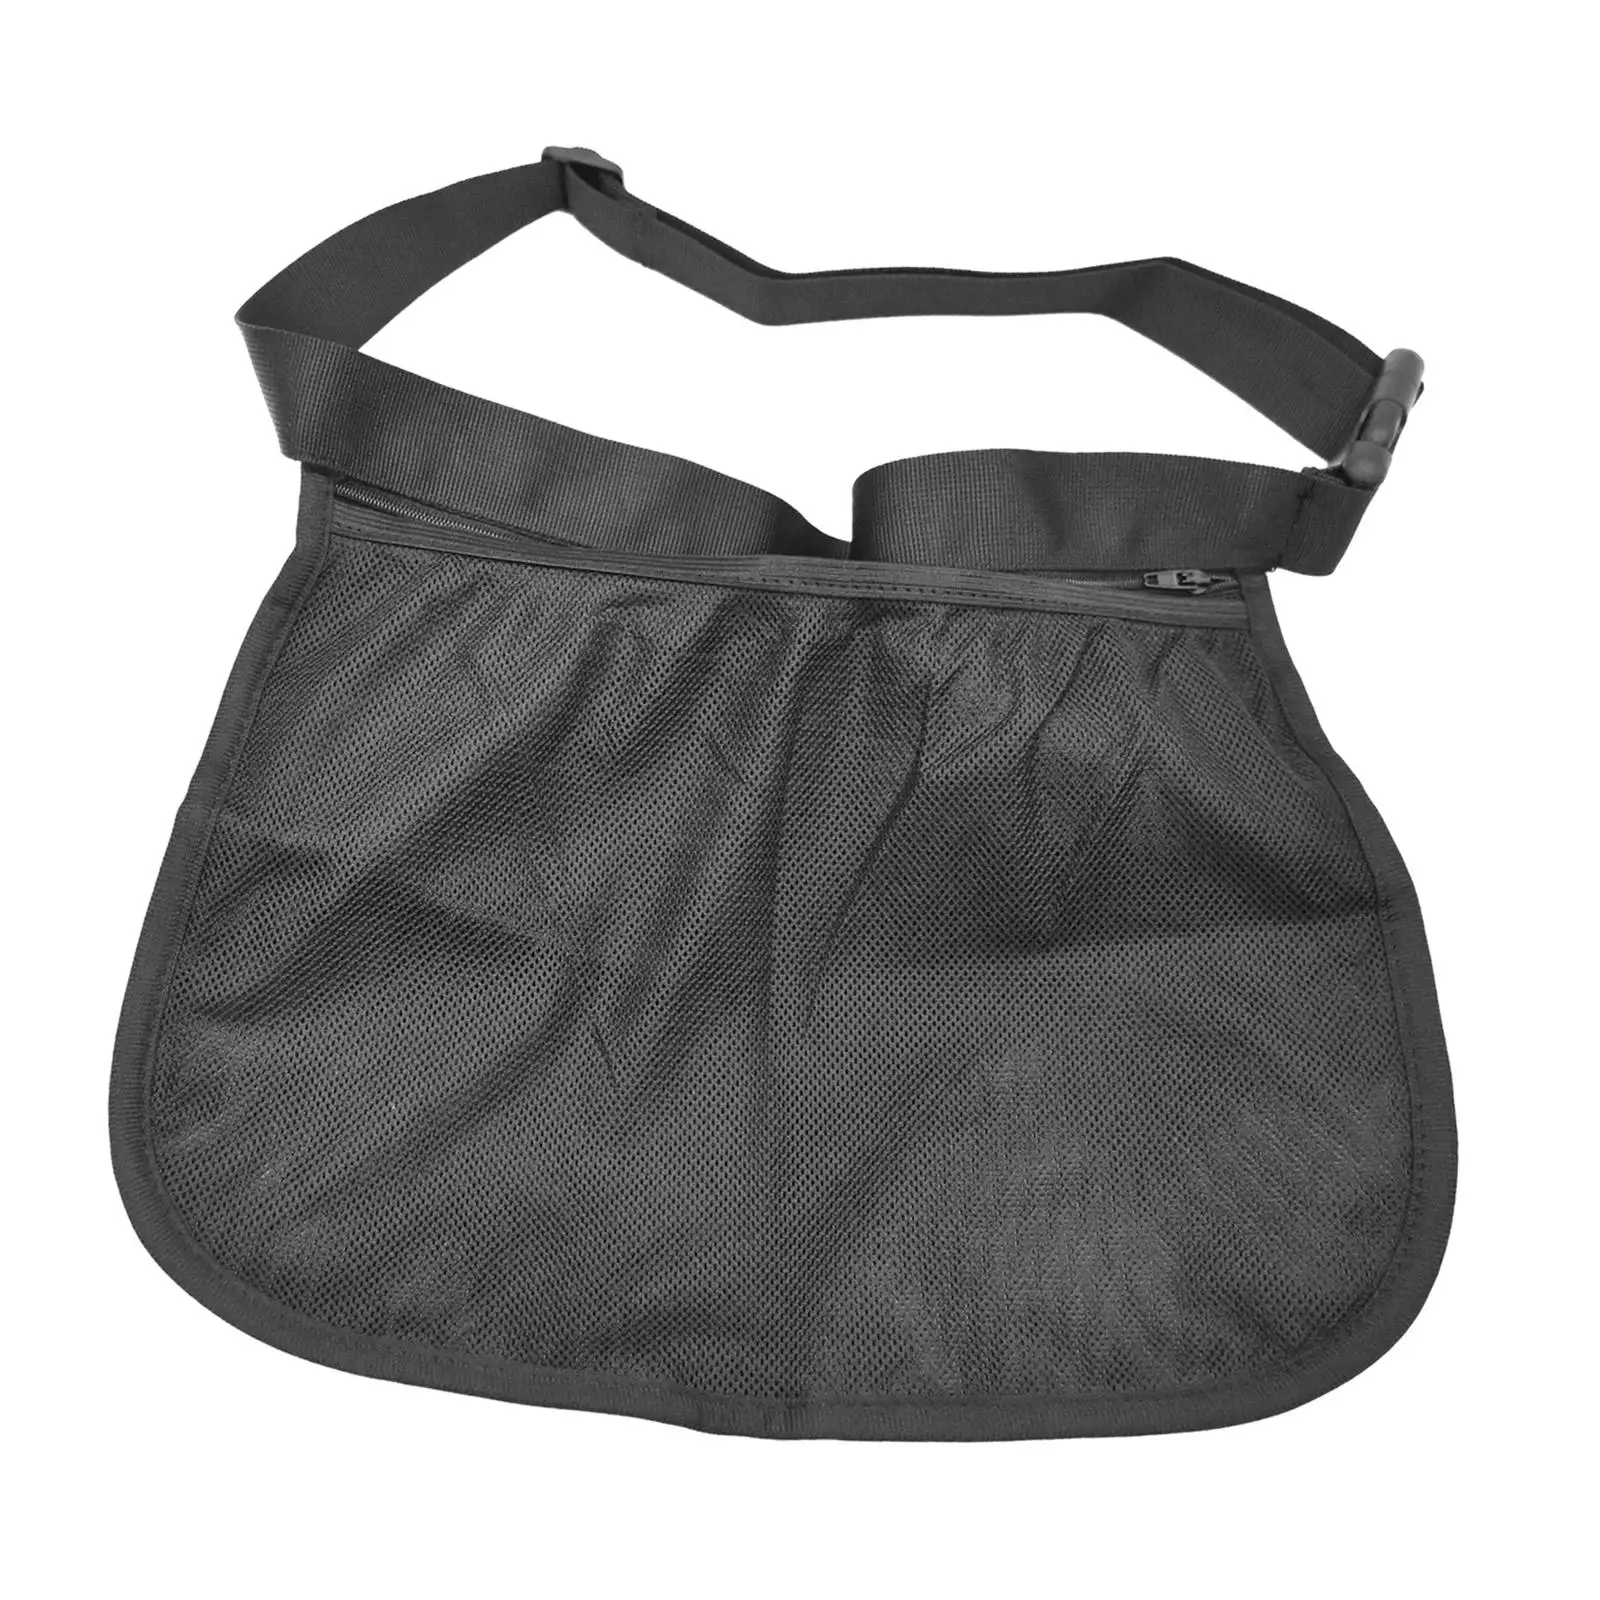 Tennis Ball Holder Mesh Storage Bag for Women Men Storing Balls and Phones